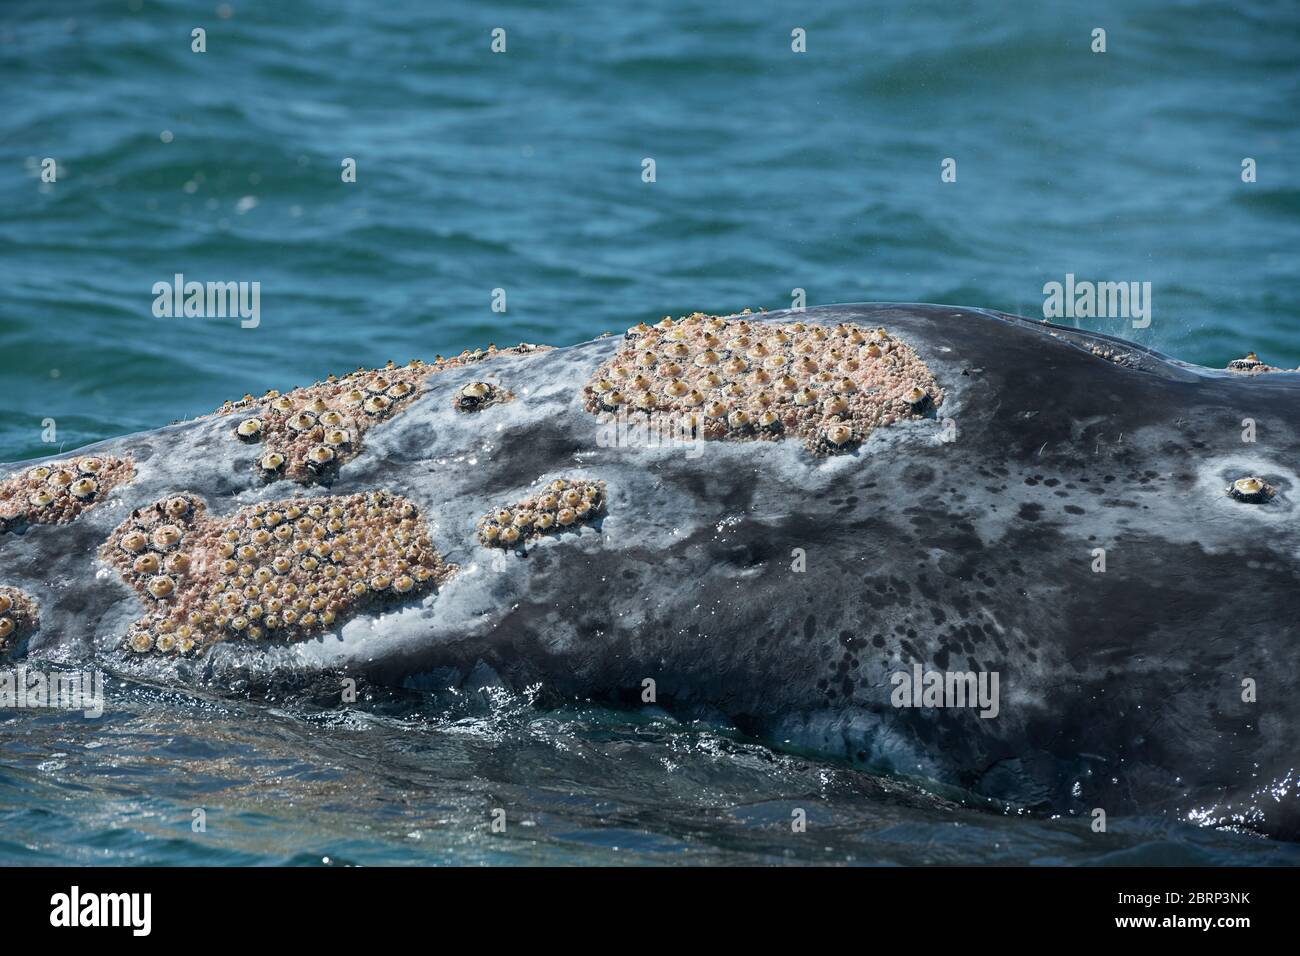 La testa di una balena grigia, Eschrichtius robusta, che si affaccia nella Laguna di San Ignacio, Baja, Messico; è coperta da numerosi barnacoli e pidocchi balena; Foto Stock